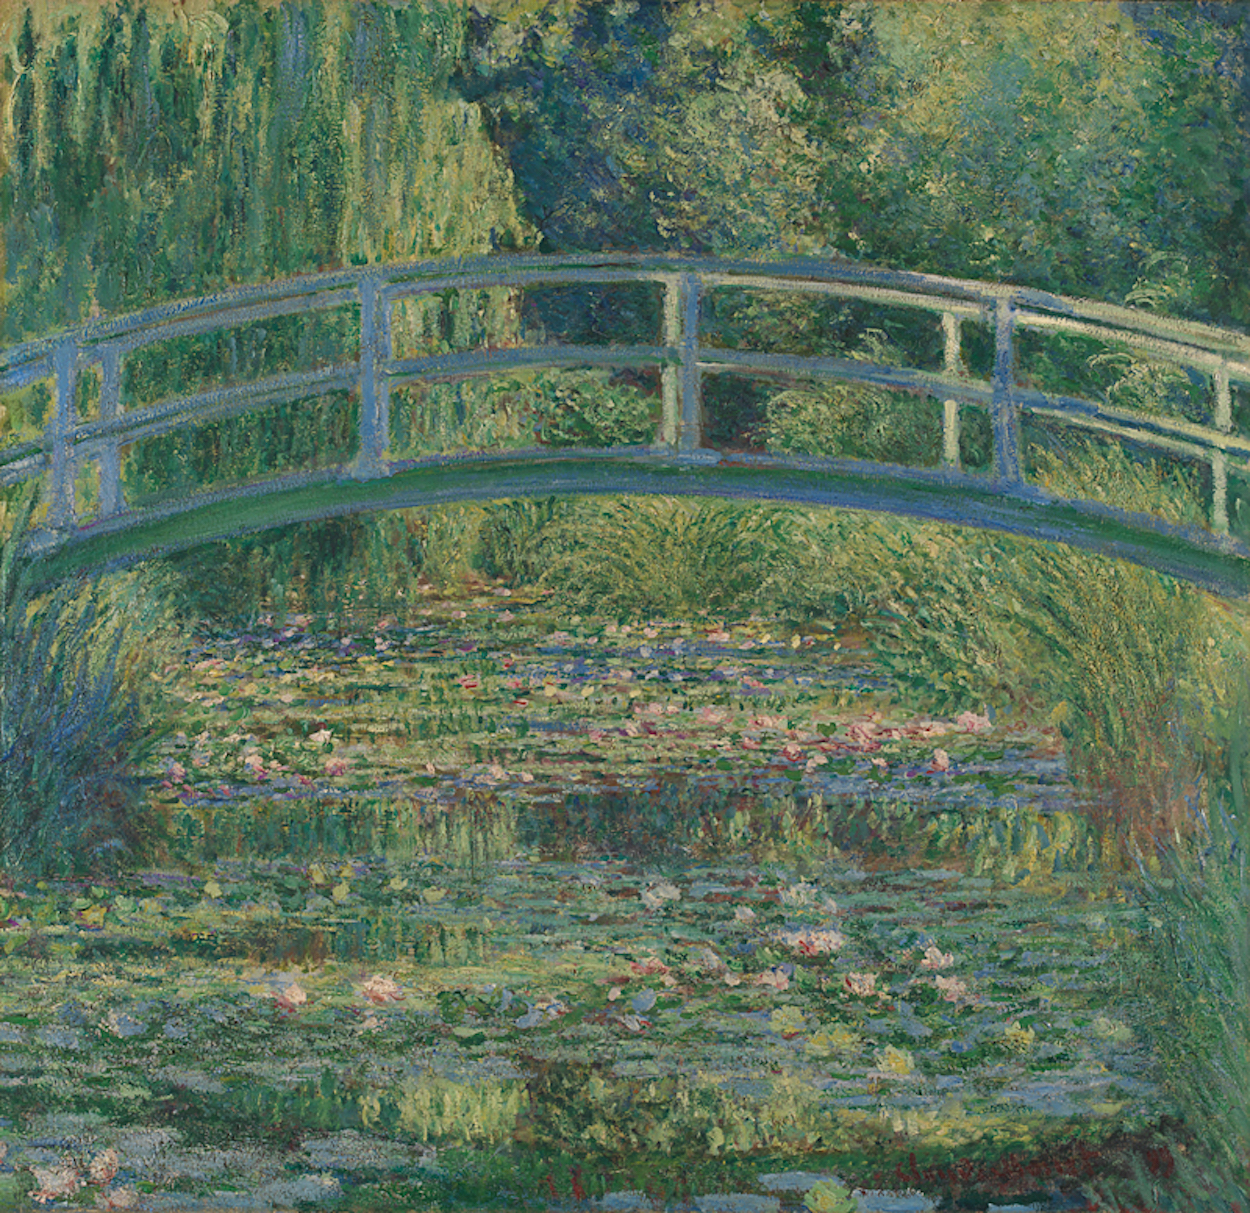 睡蓮の池 by Claude Monet - 1899年 - 88.3 x 93.1 cm 